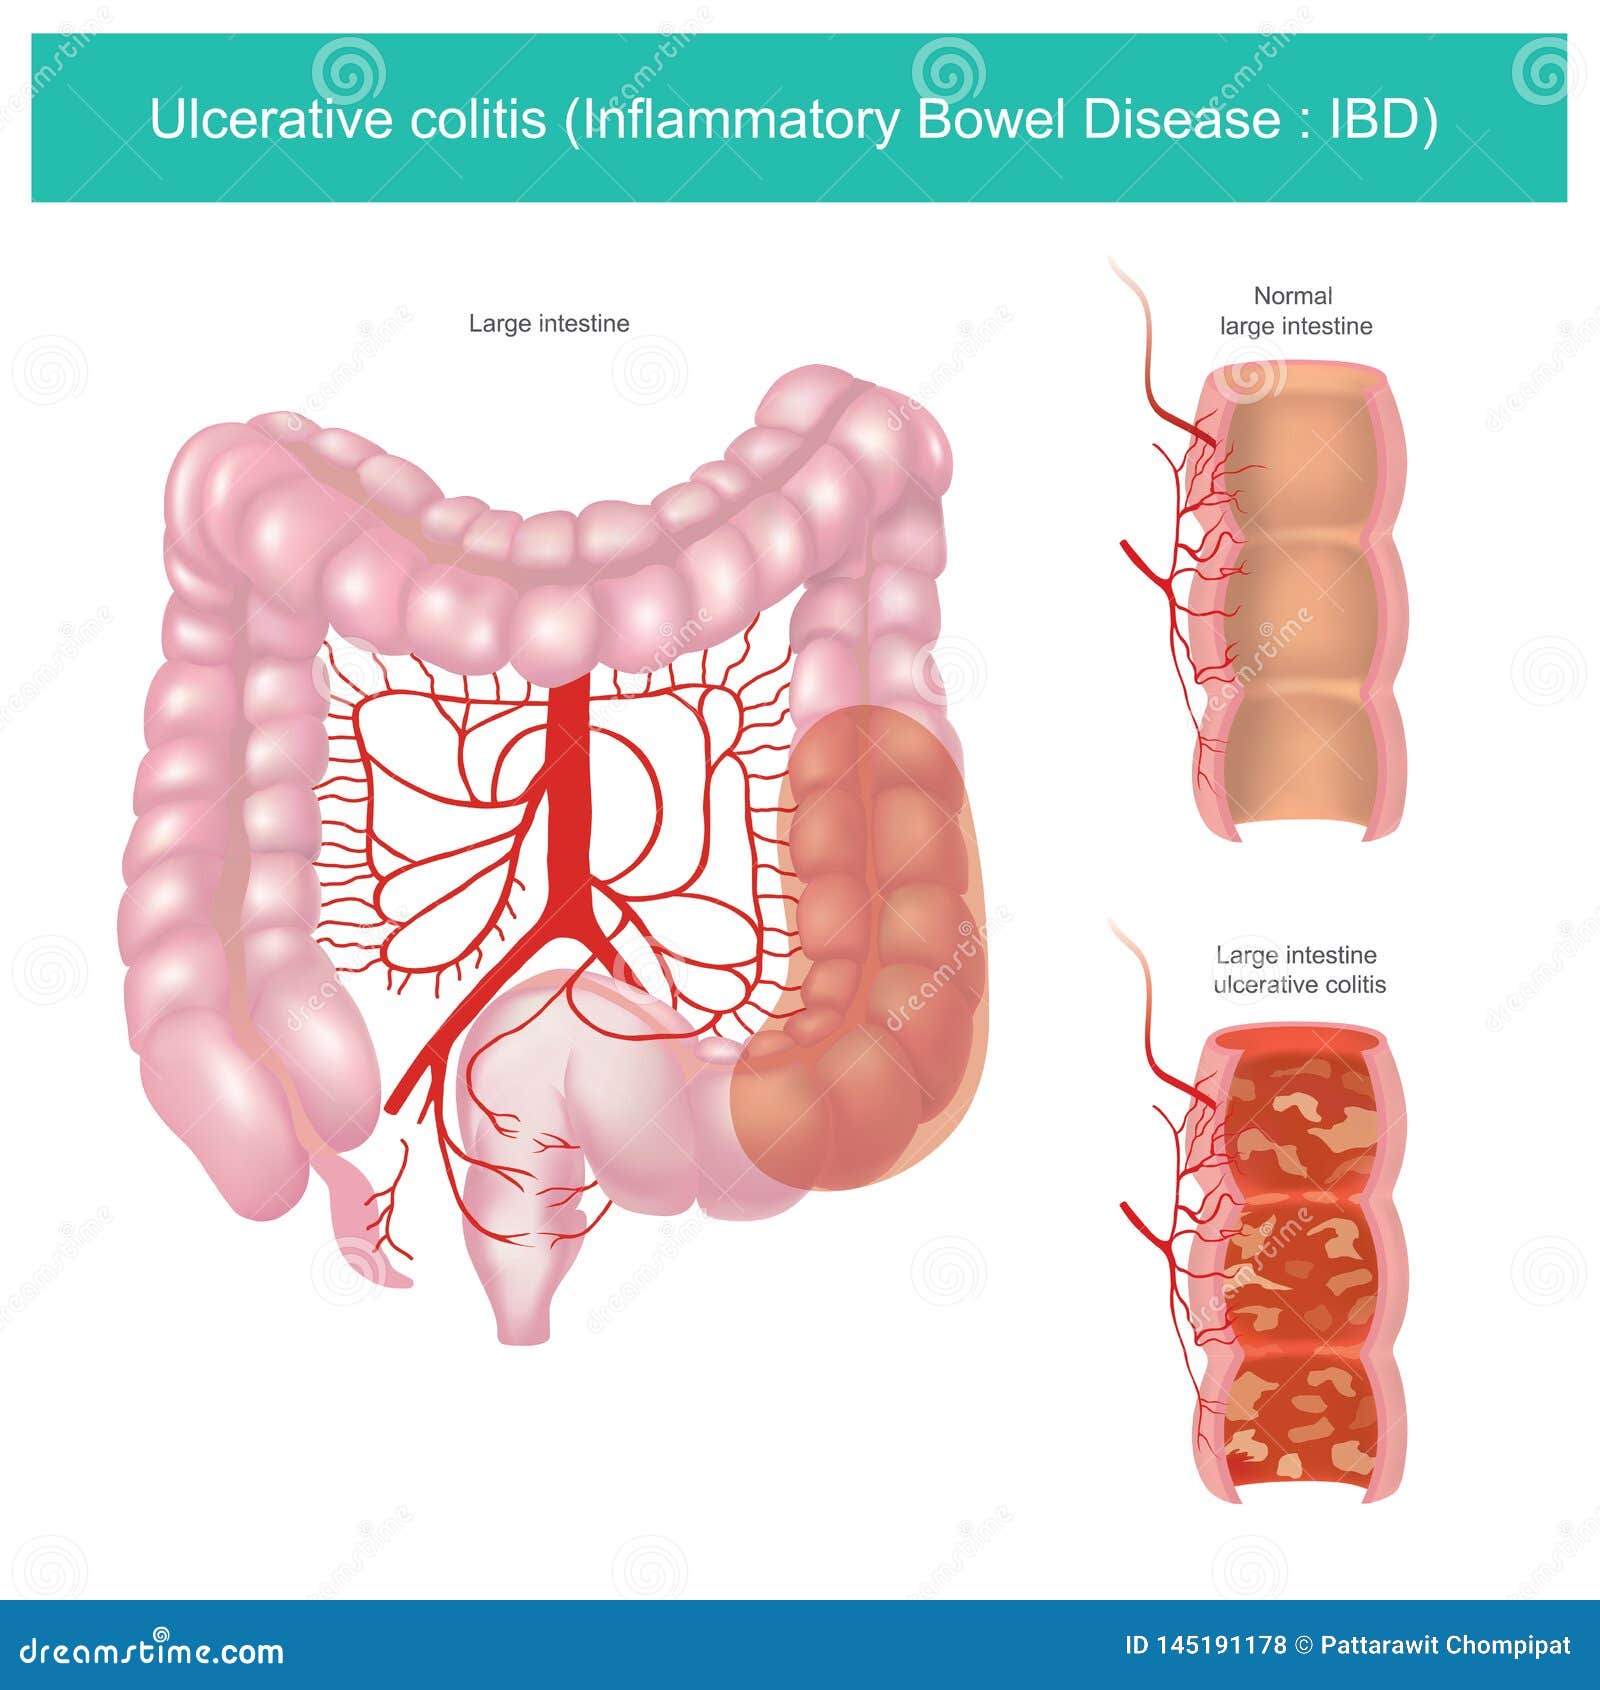 ulcerative colitis.  graphic.